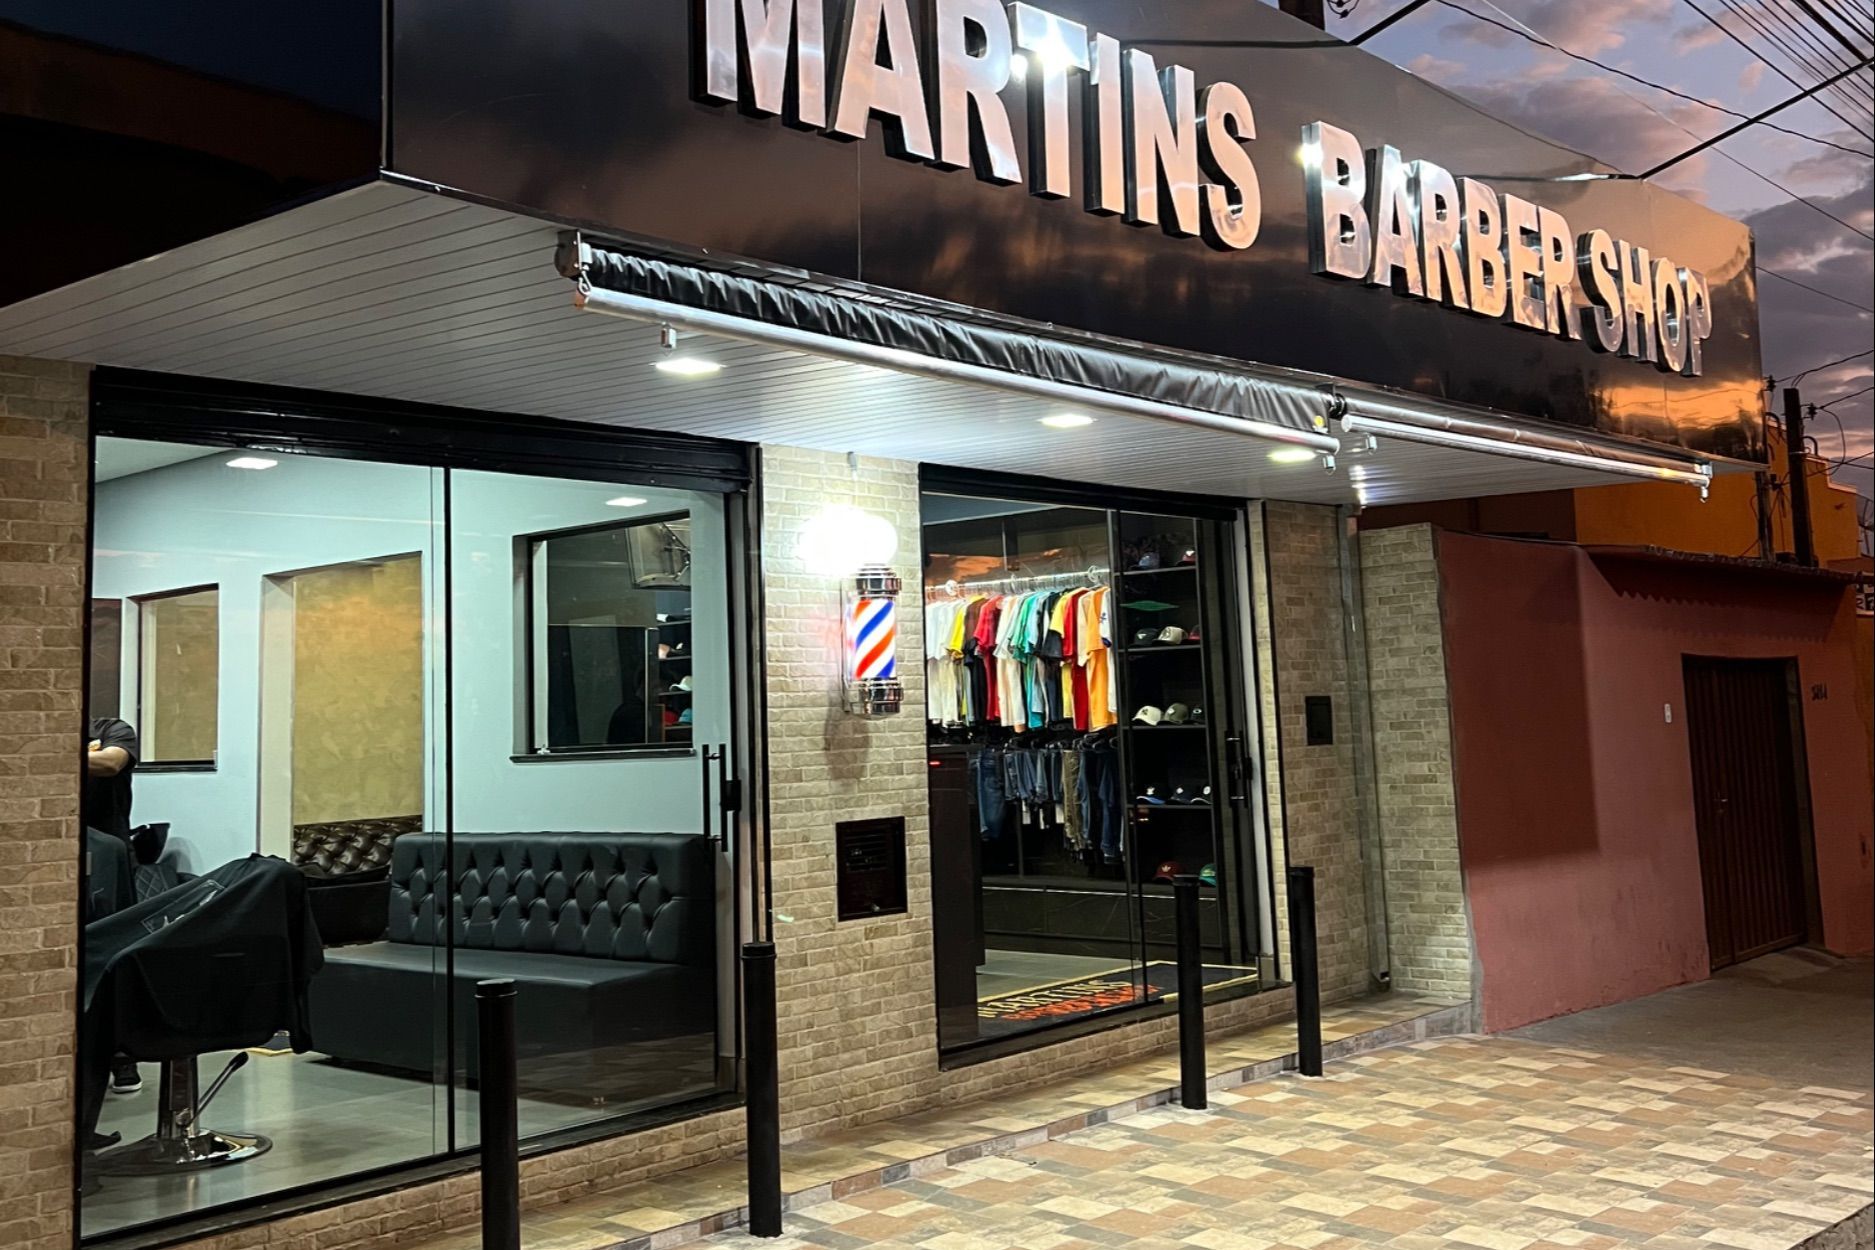 Home - Escola de cabeleireiros e barbeiros J R Martins